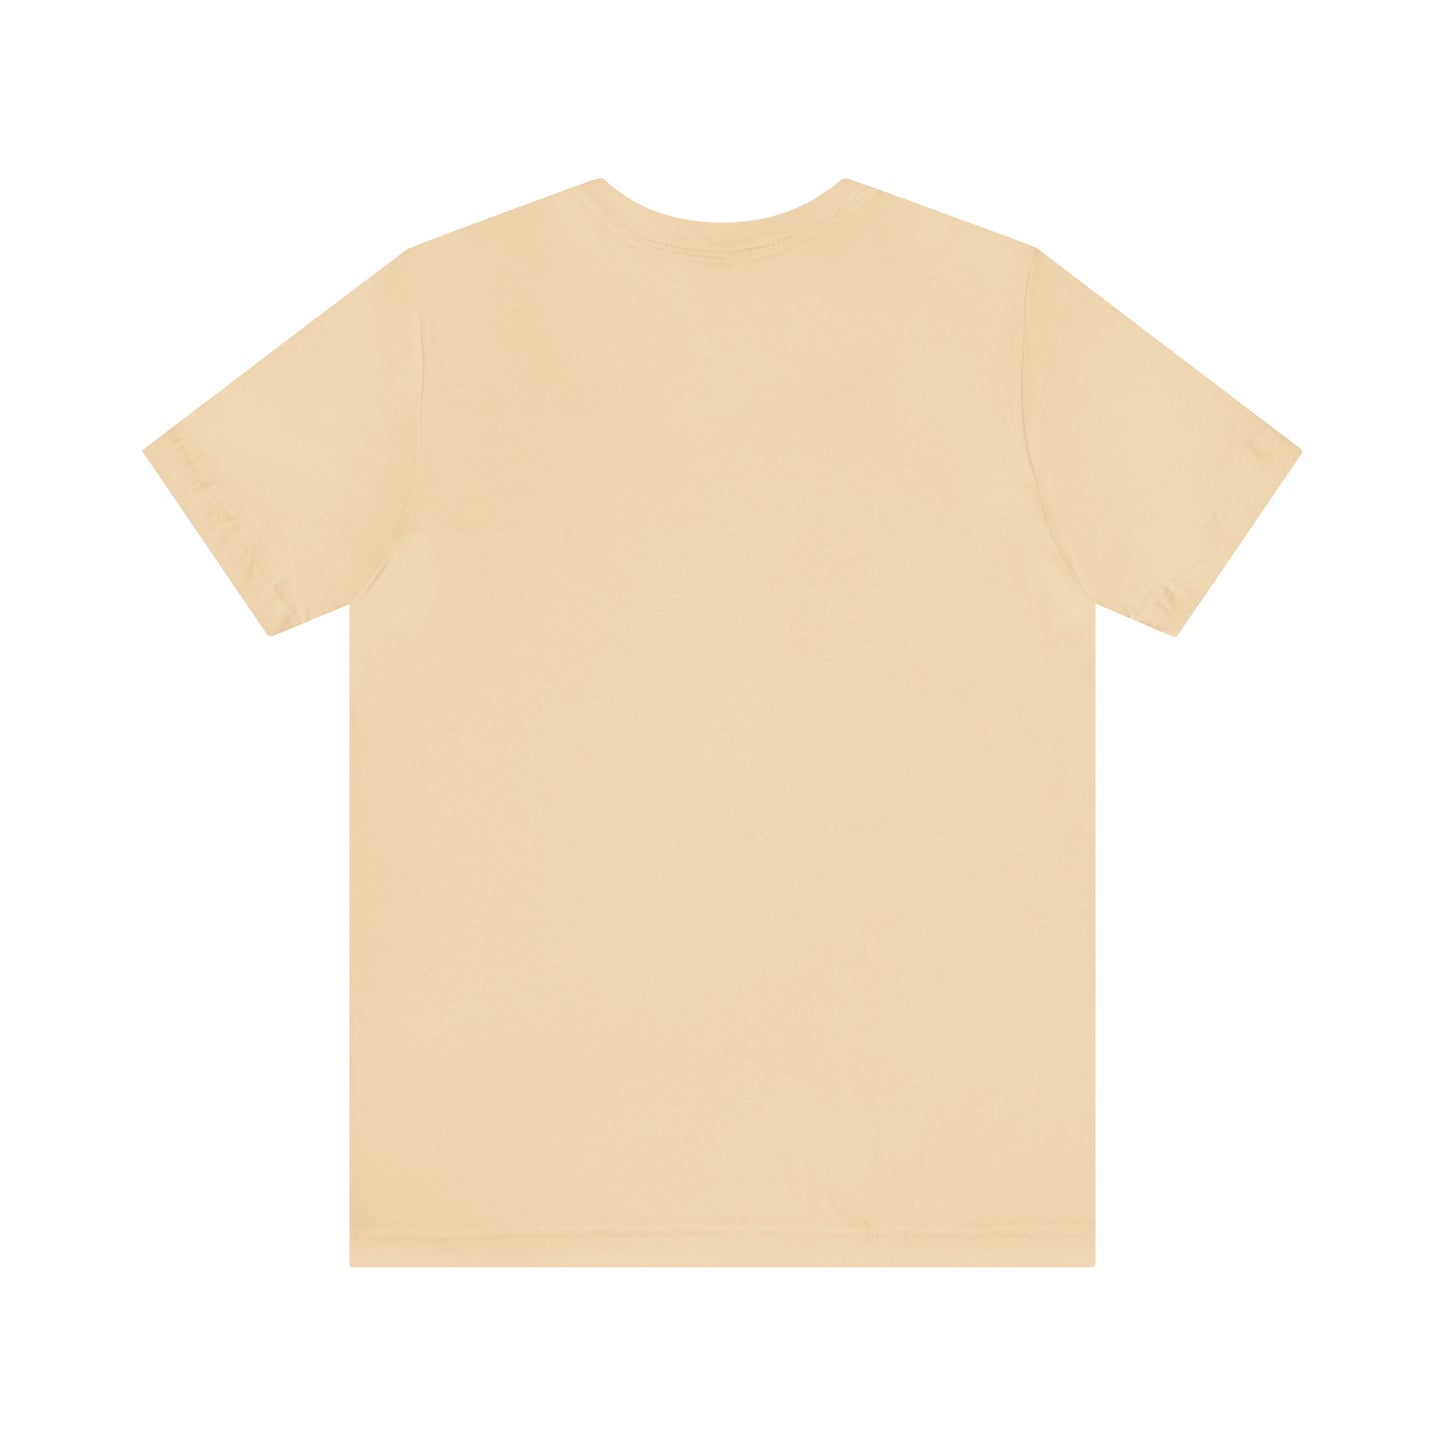 Sloth Yoga T-Shirt, Yoga Gift, Funny Yoga, Sloth T-Shirt, Cute Sloth Shirt